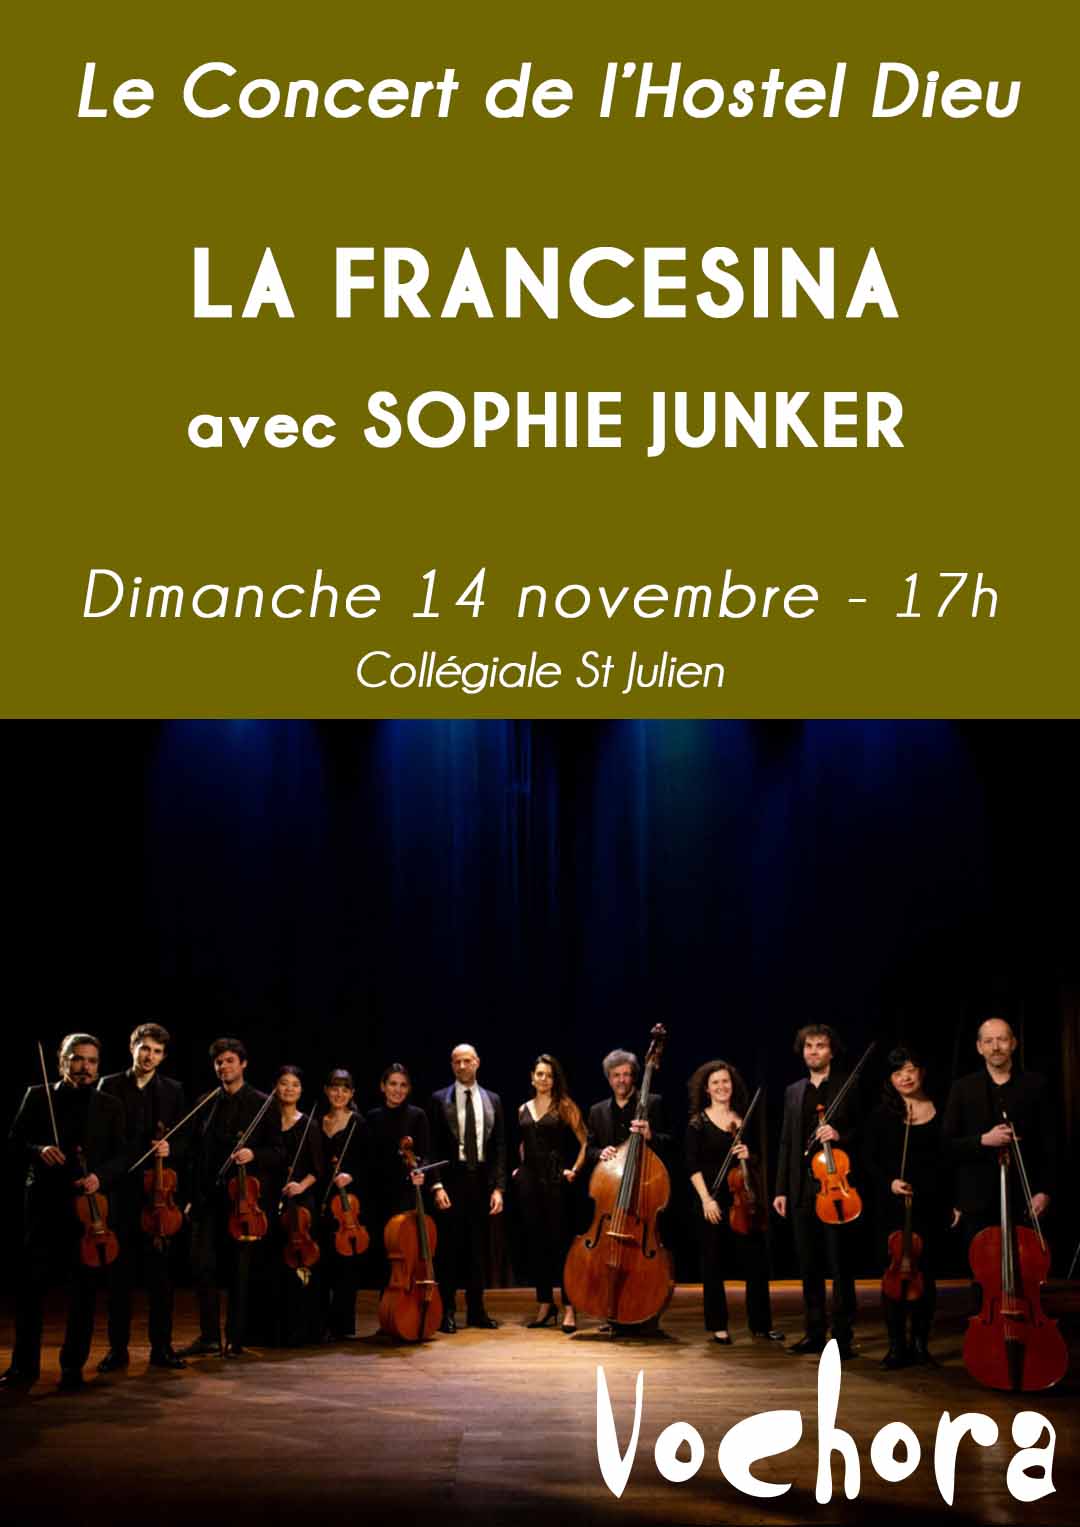 LA FRANCESINA. Concert de l'Hostel Dieu avec Sophie Junker. Proposé par VOCHORA. Dimanche 14 novembre 2021 à 17h00 - Collégiale St Julien